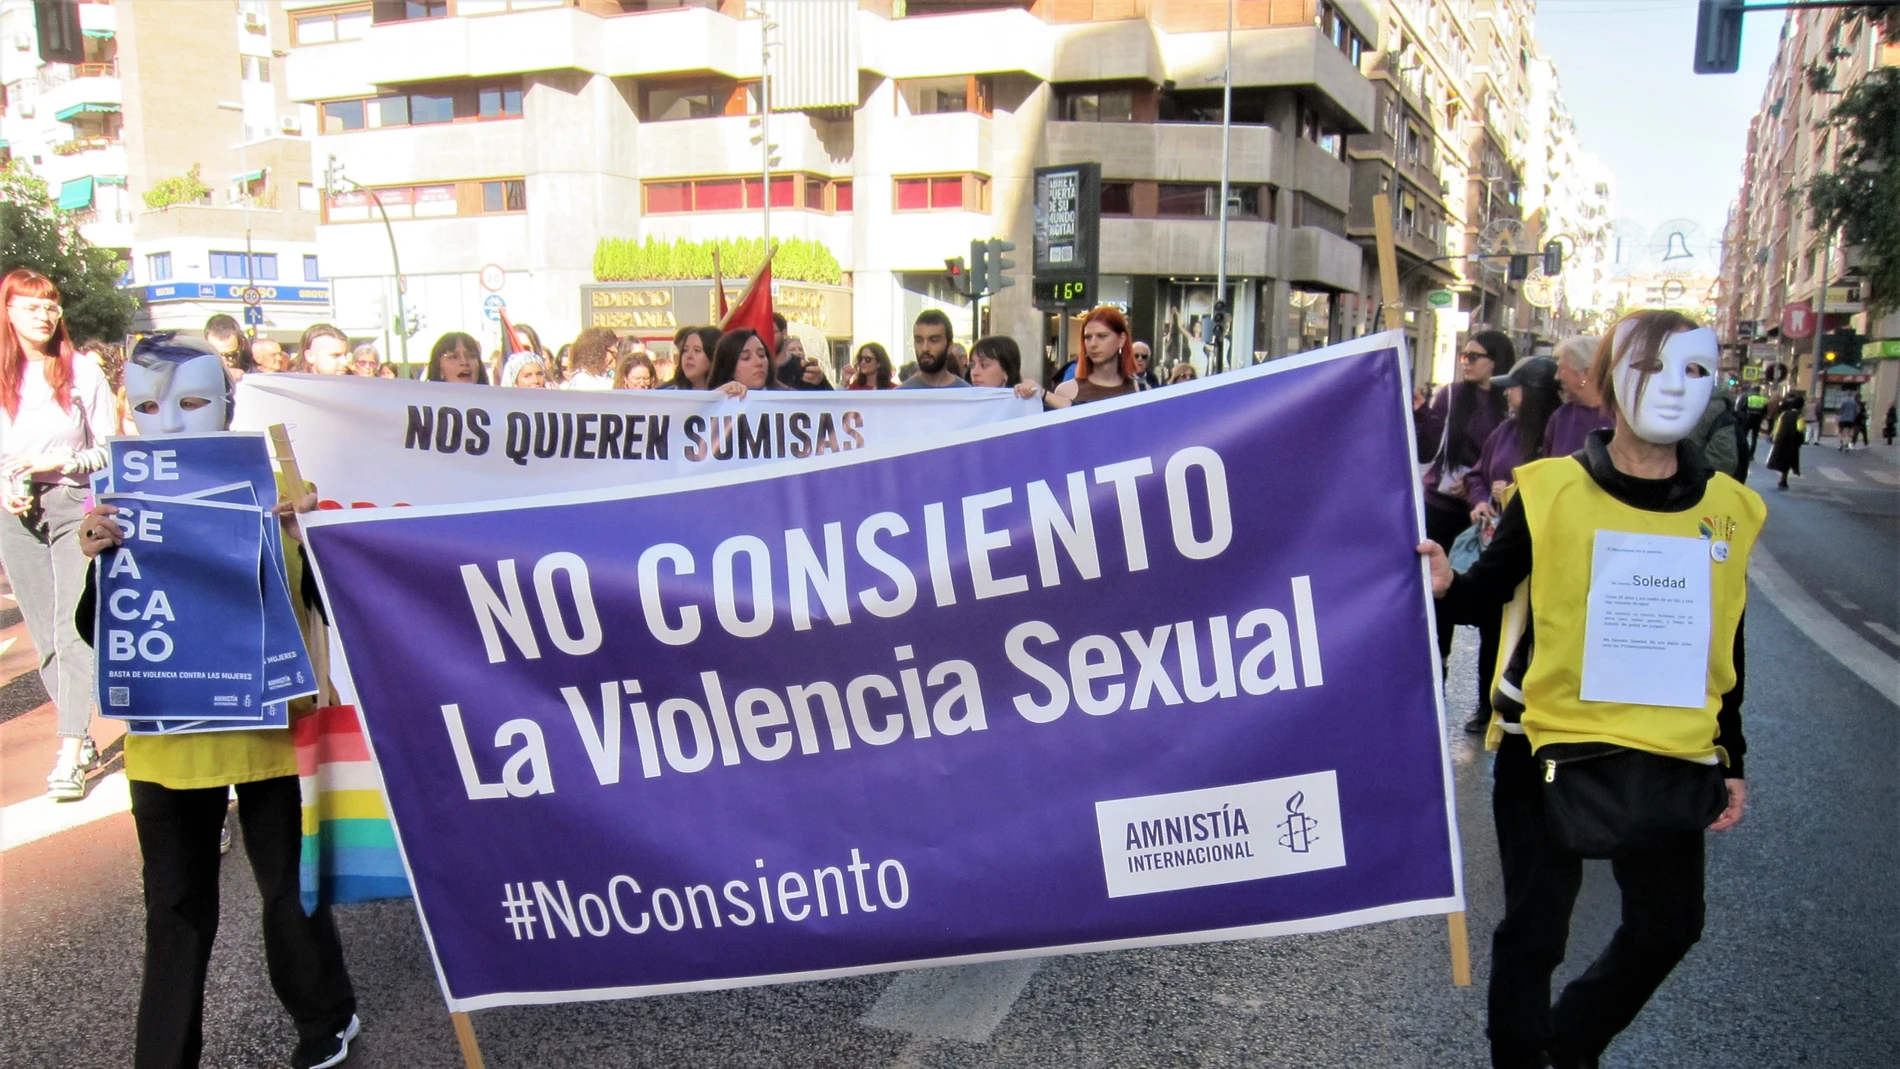 Convocadas por las diversas organizaciones feministas, englobadas en la Asablea Feminista de la Región de Murcia la mayoría de ellas, la ciudad de Murcia ha celebrado el 25N